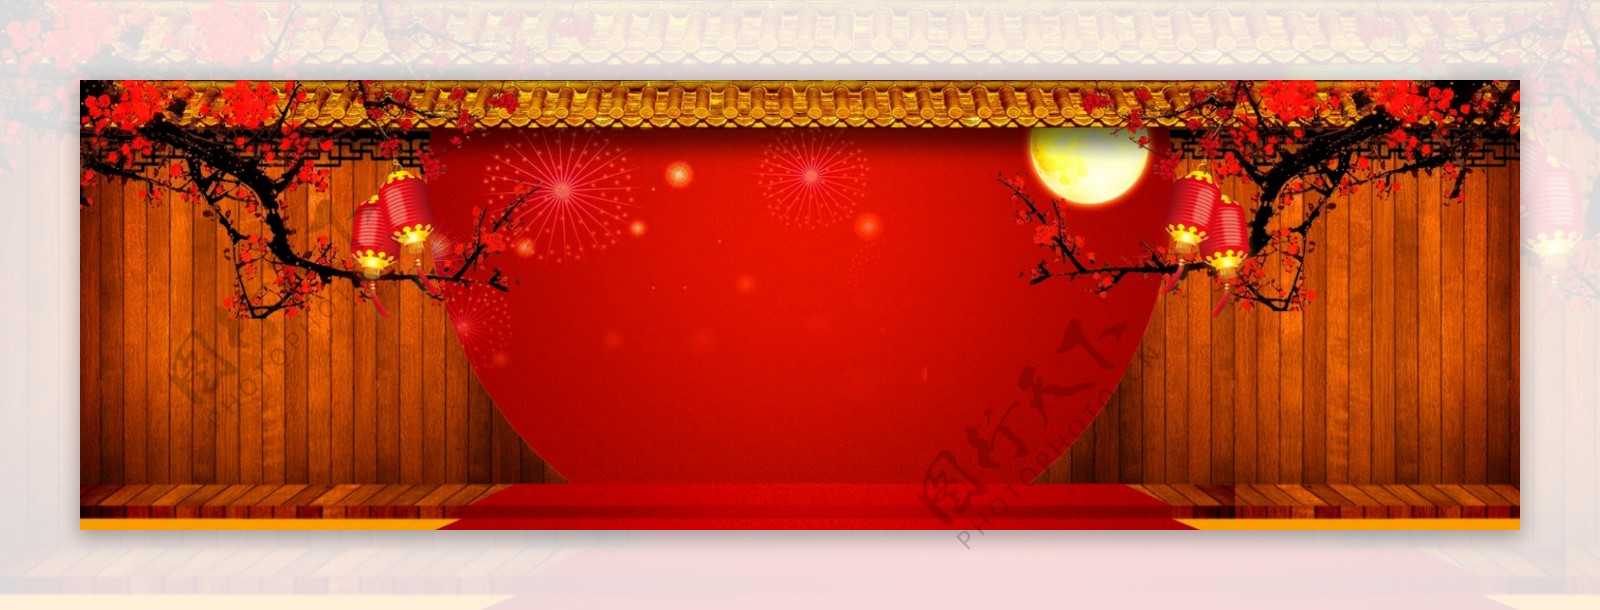 节日通用背景banner图